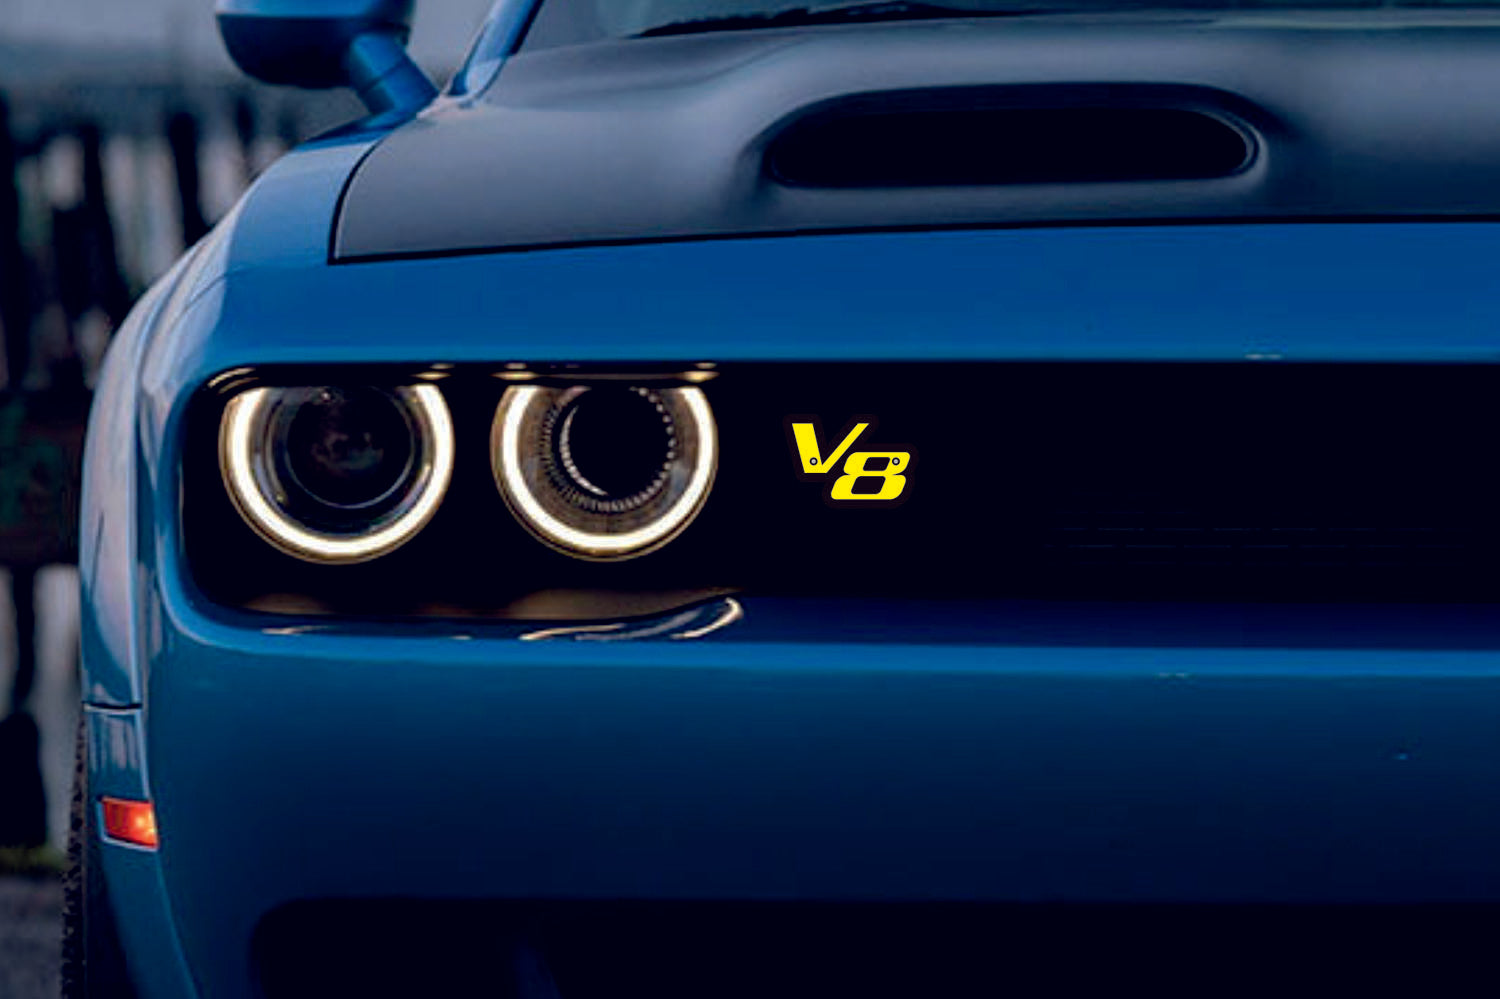 DODGE Radiator grille emblem with V8 logo